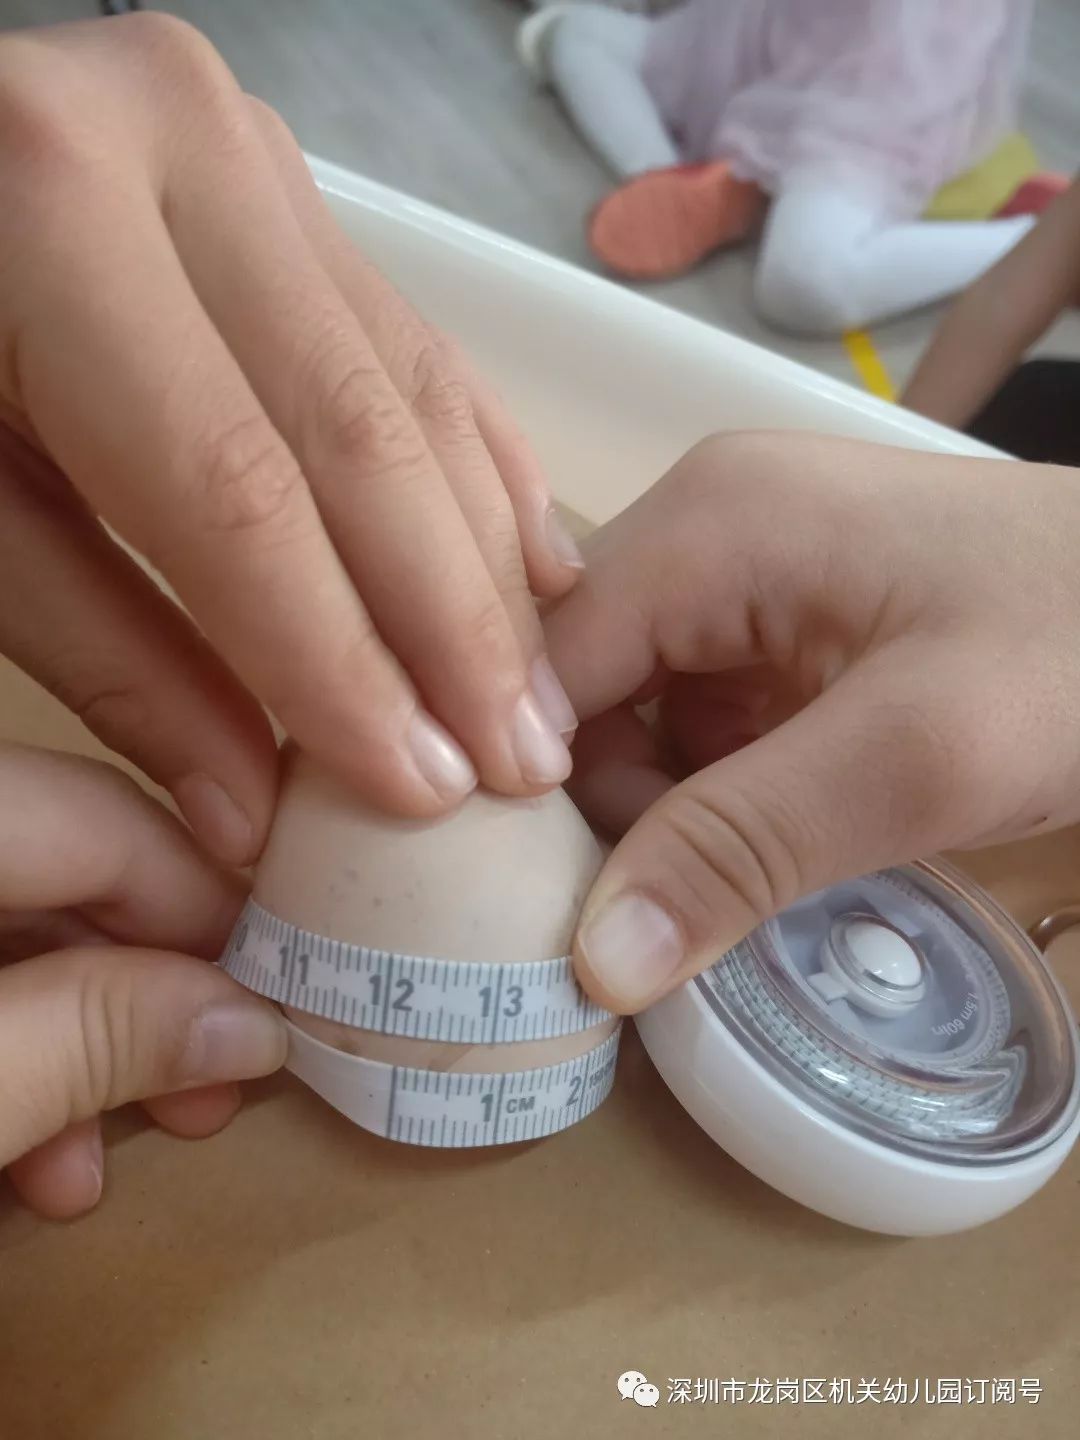 我们测量鸡蛋的大小以此观察鸡蛋的大小是否会影响小鸡出生时的大小